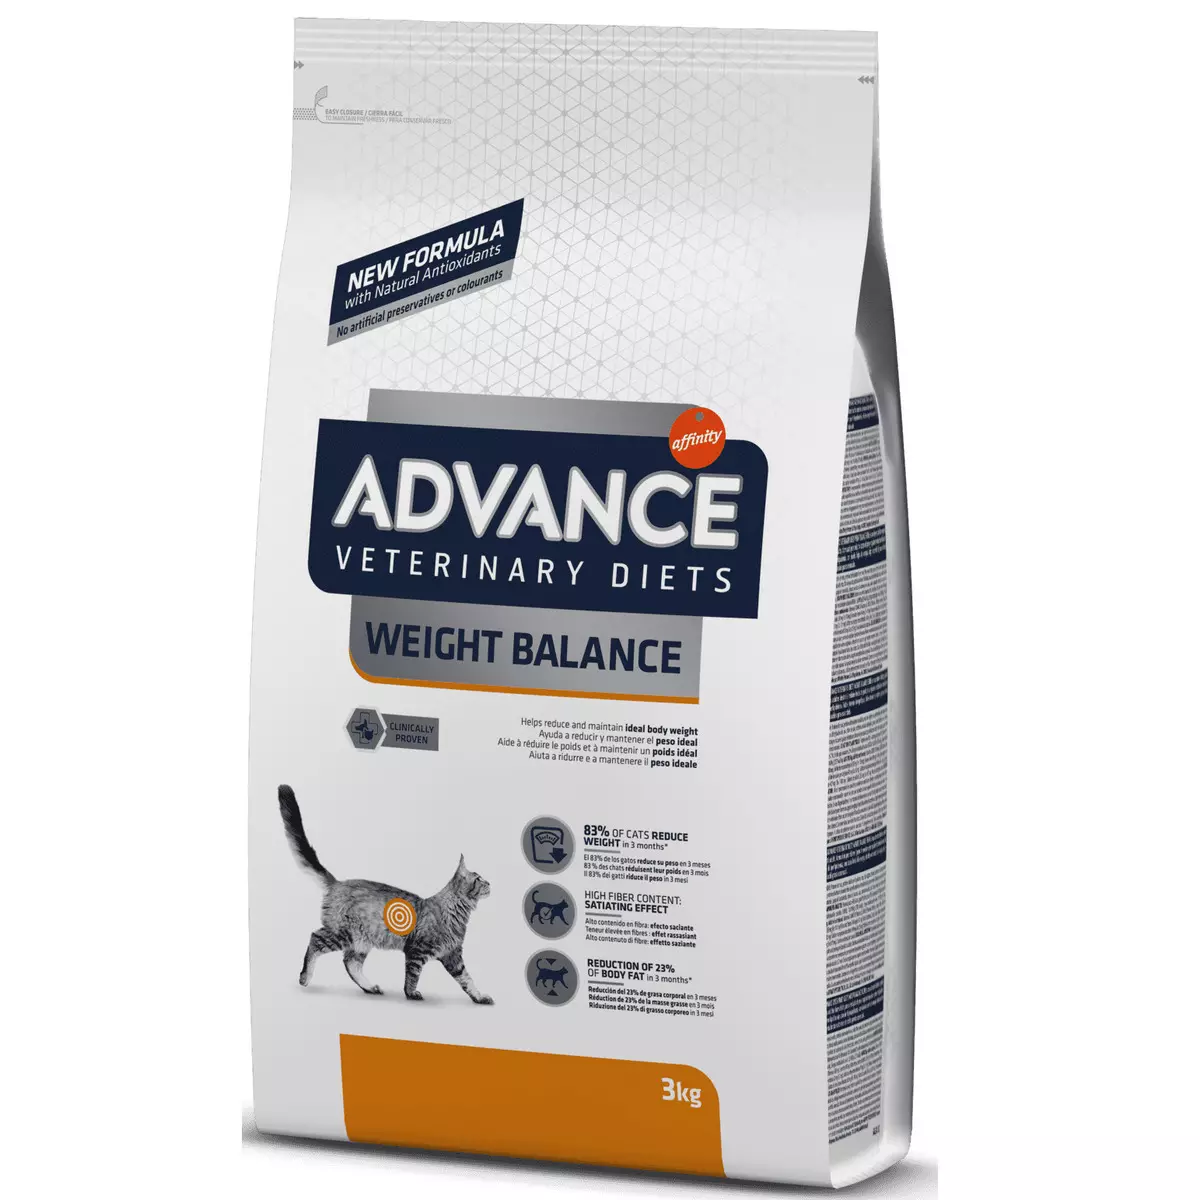 Advance Cat Feed: voor gesteriliseerde katten en voor kittens, zalm en kalkoen, andere diervoeders en instructies voor hun gebruik. Beoordelingen 22062_28